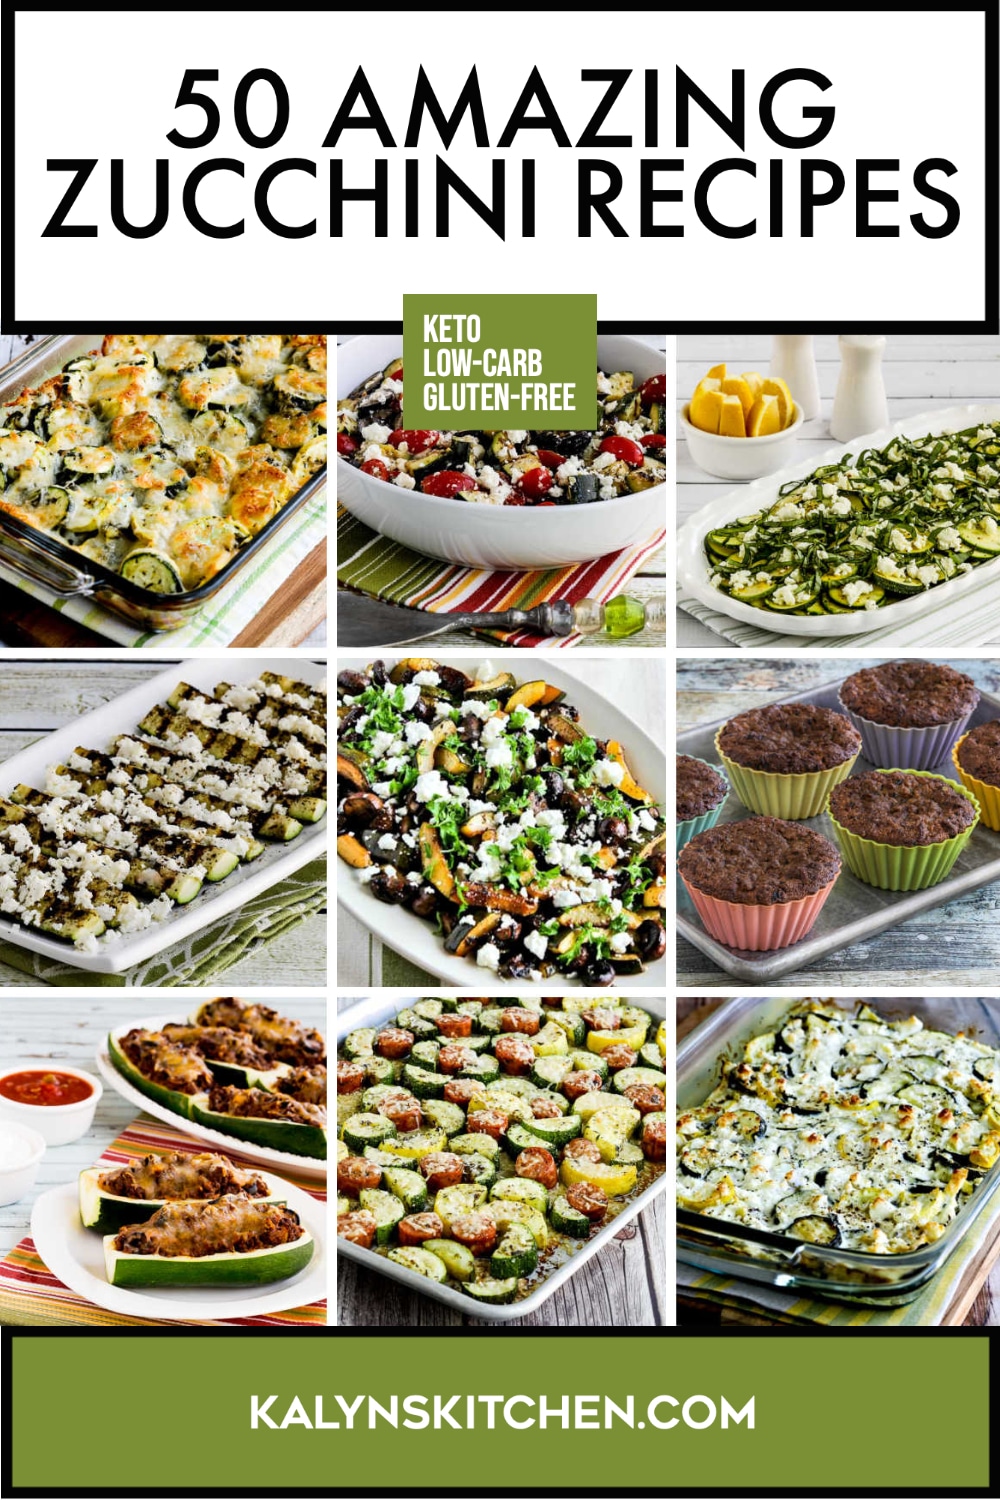 Pinterest image of 50 Amazing Zucchini Recipes